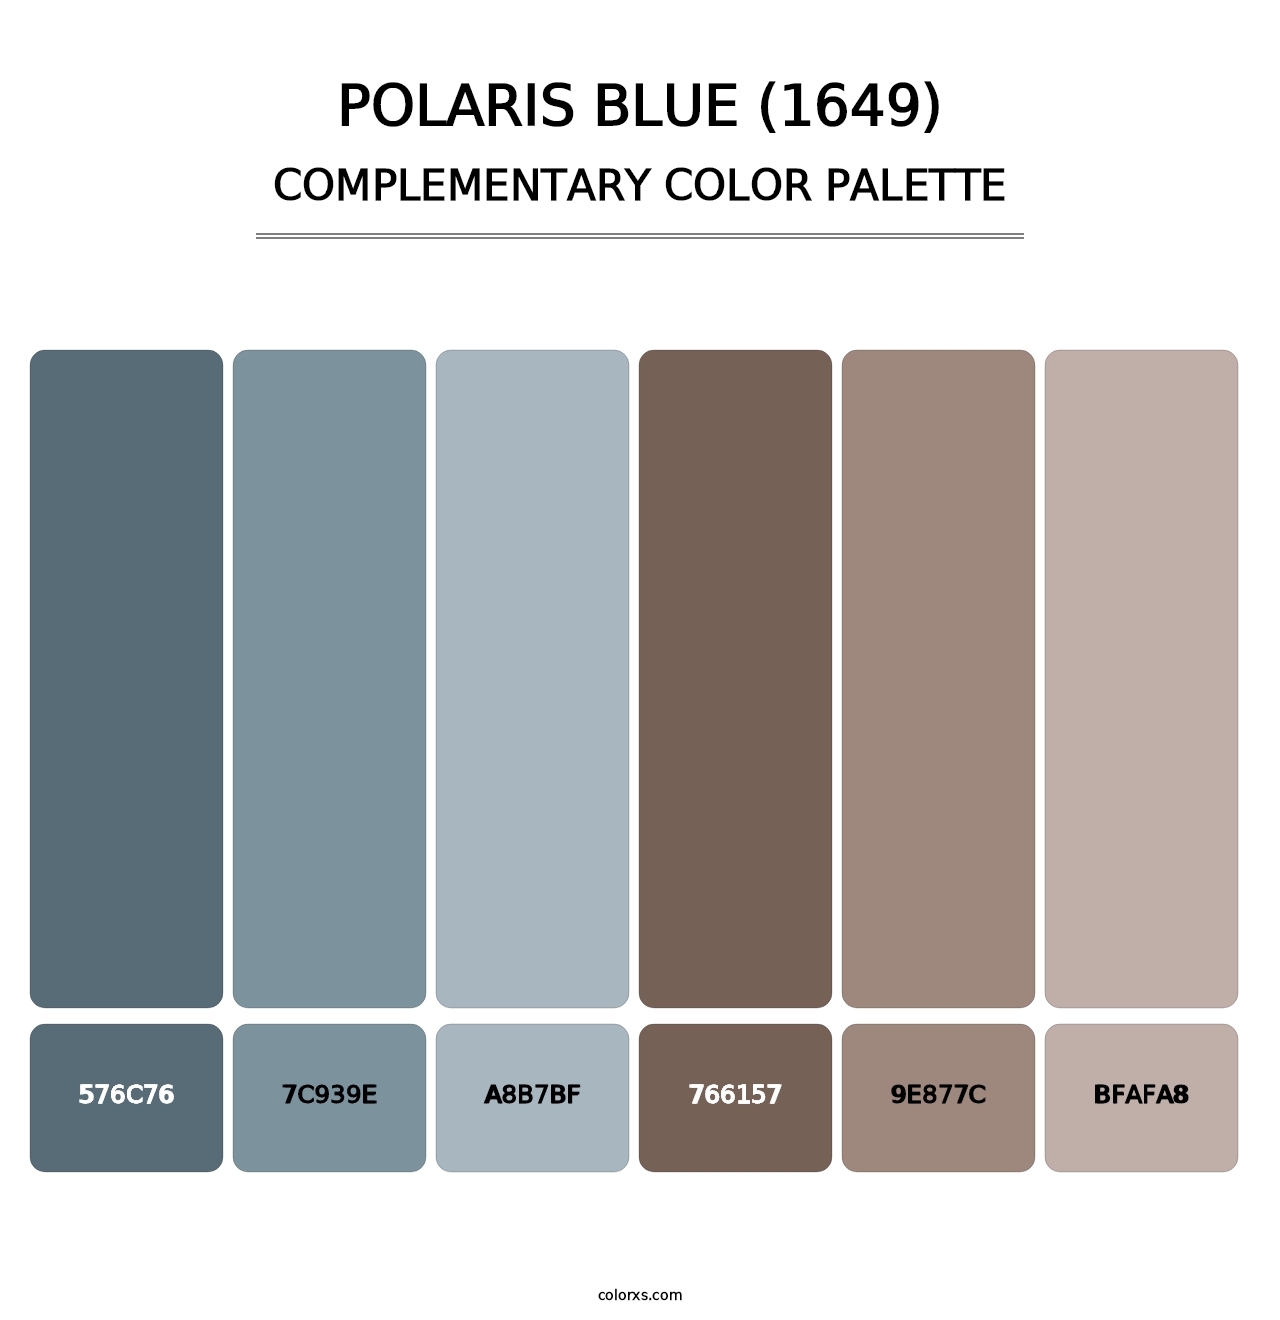 Polaris Blue (1649) - Complementary Color Palette